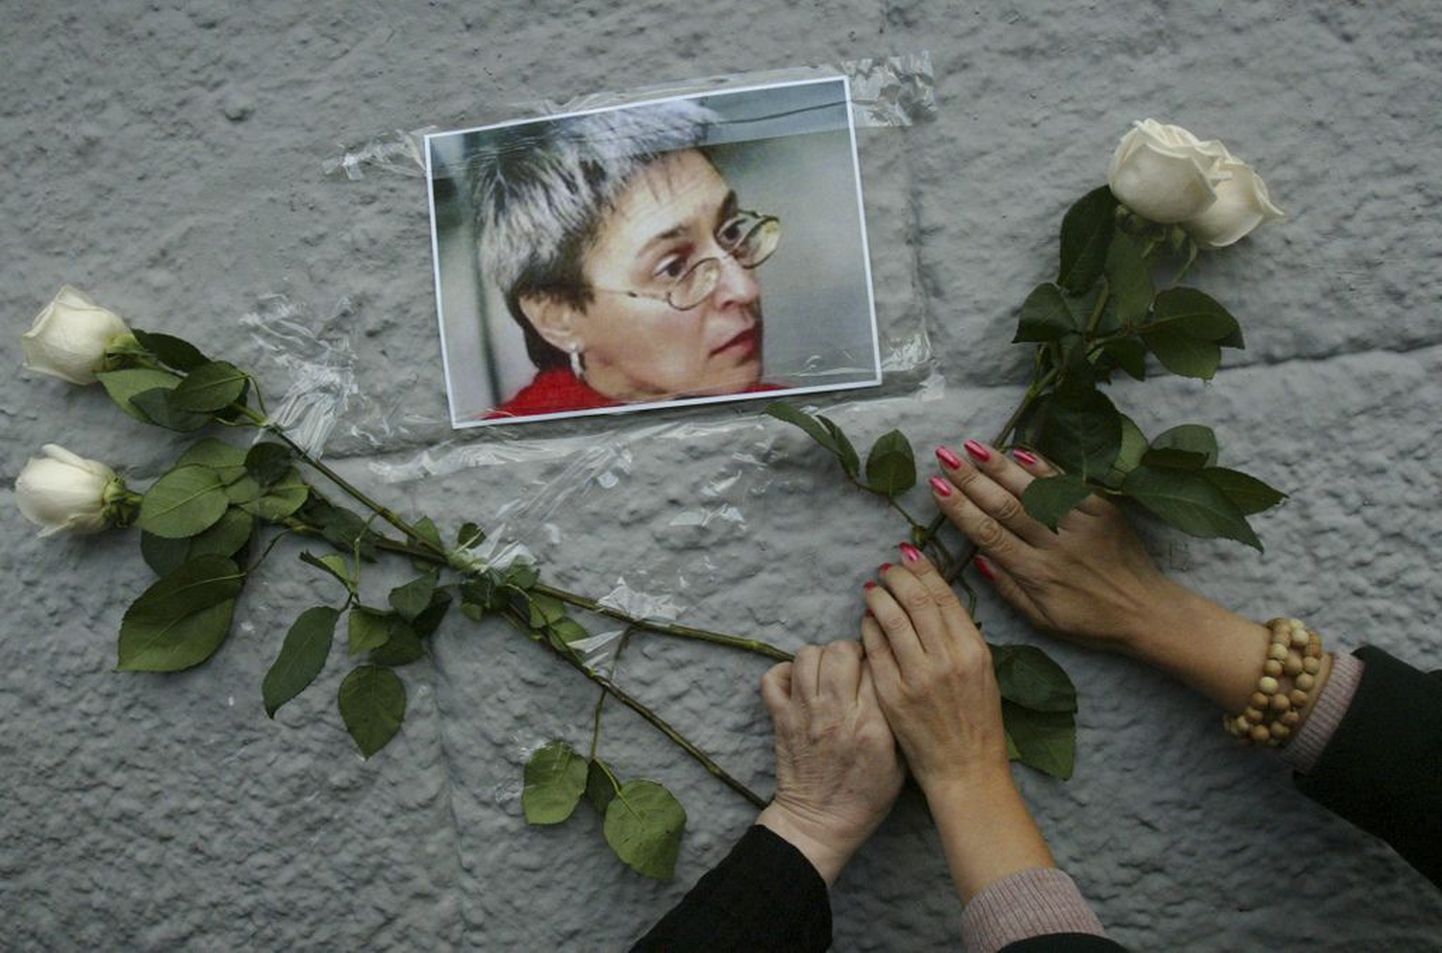 Одно из самых громких убийств в России - убийство журналистки Анны Политковской, которая работала в «Новой газете».